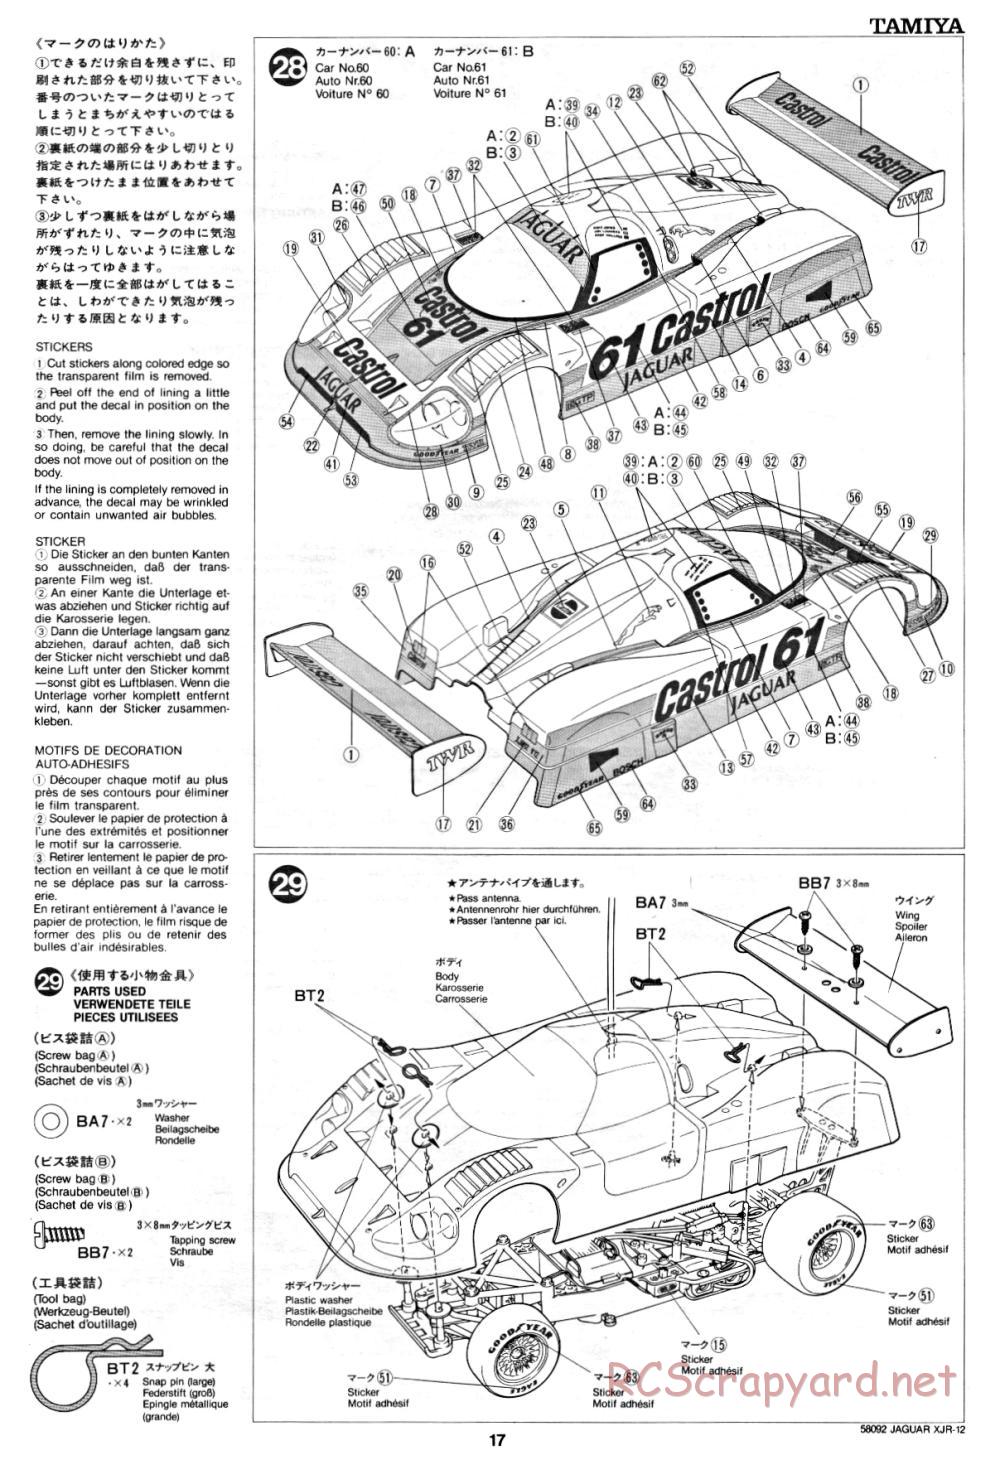 Tamiya - Jaguar XJR-12 - 58092 - Manual - Page 17